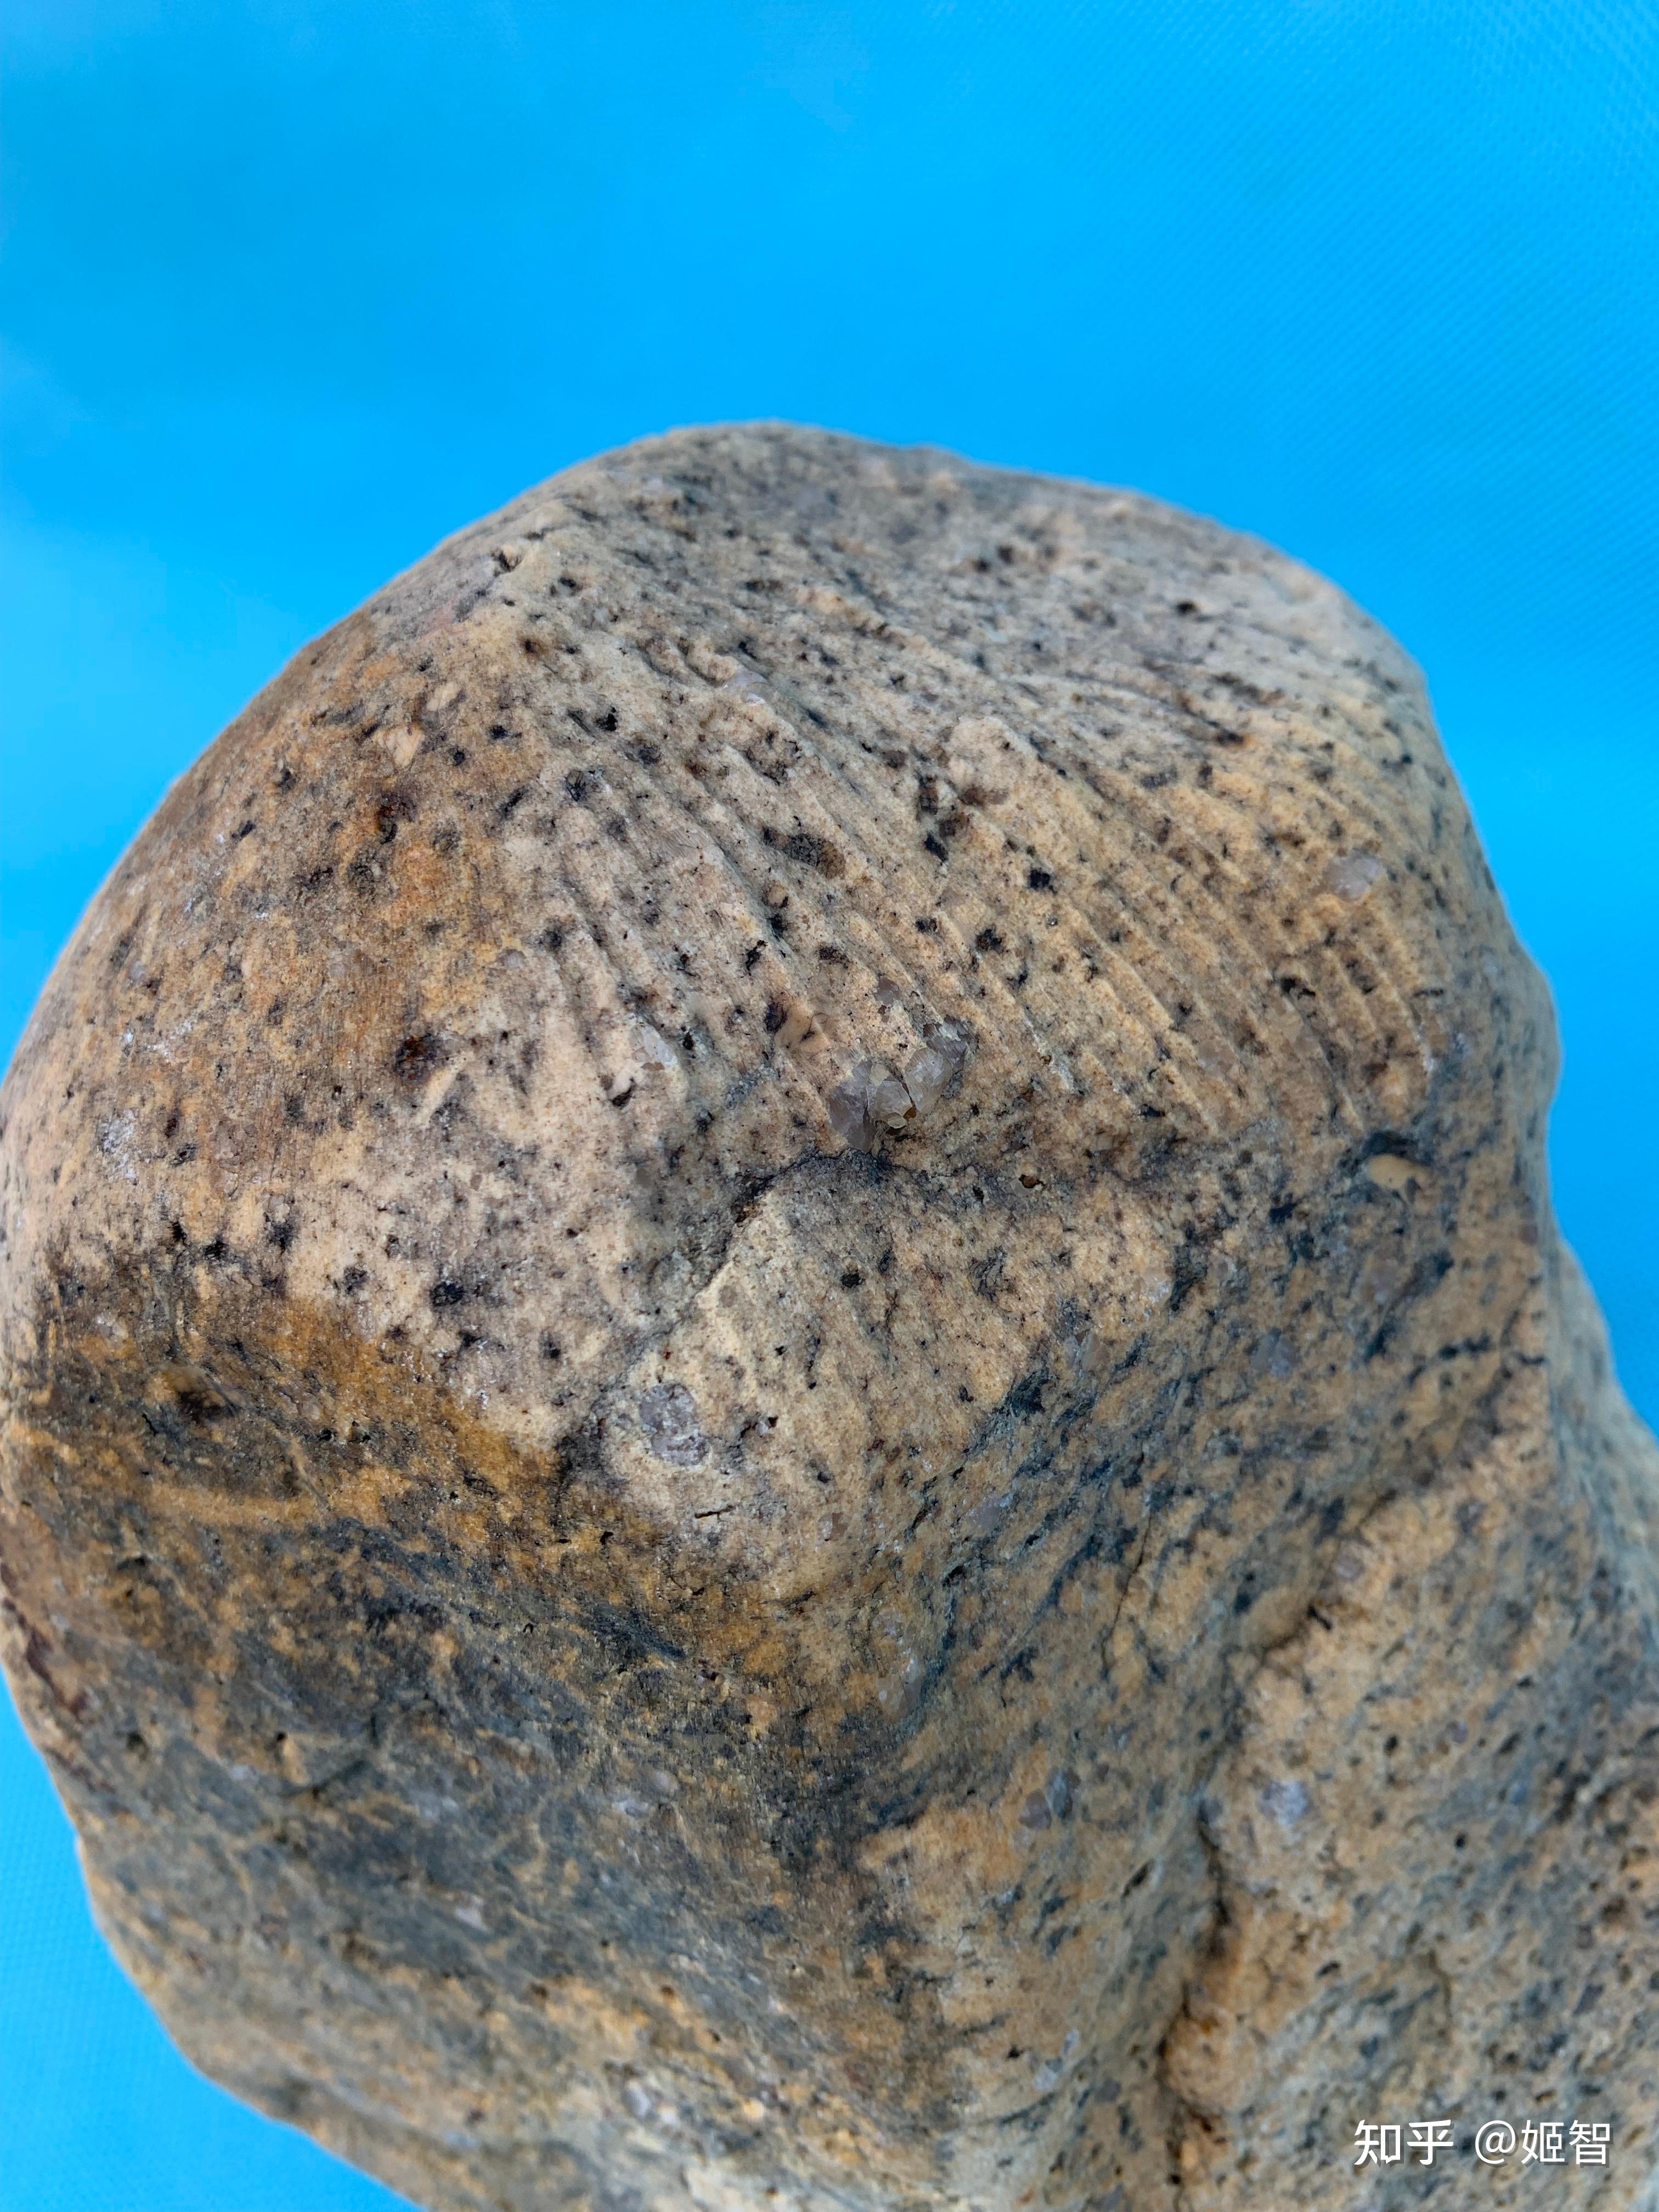 宁夏陨石收藏研究会会长(图中)这块定向顽火辉石球粒陨石的头部顶端